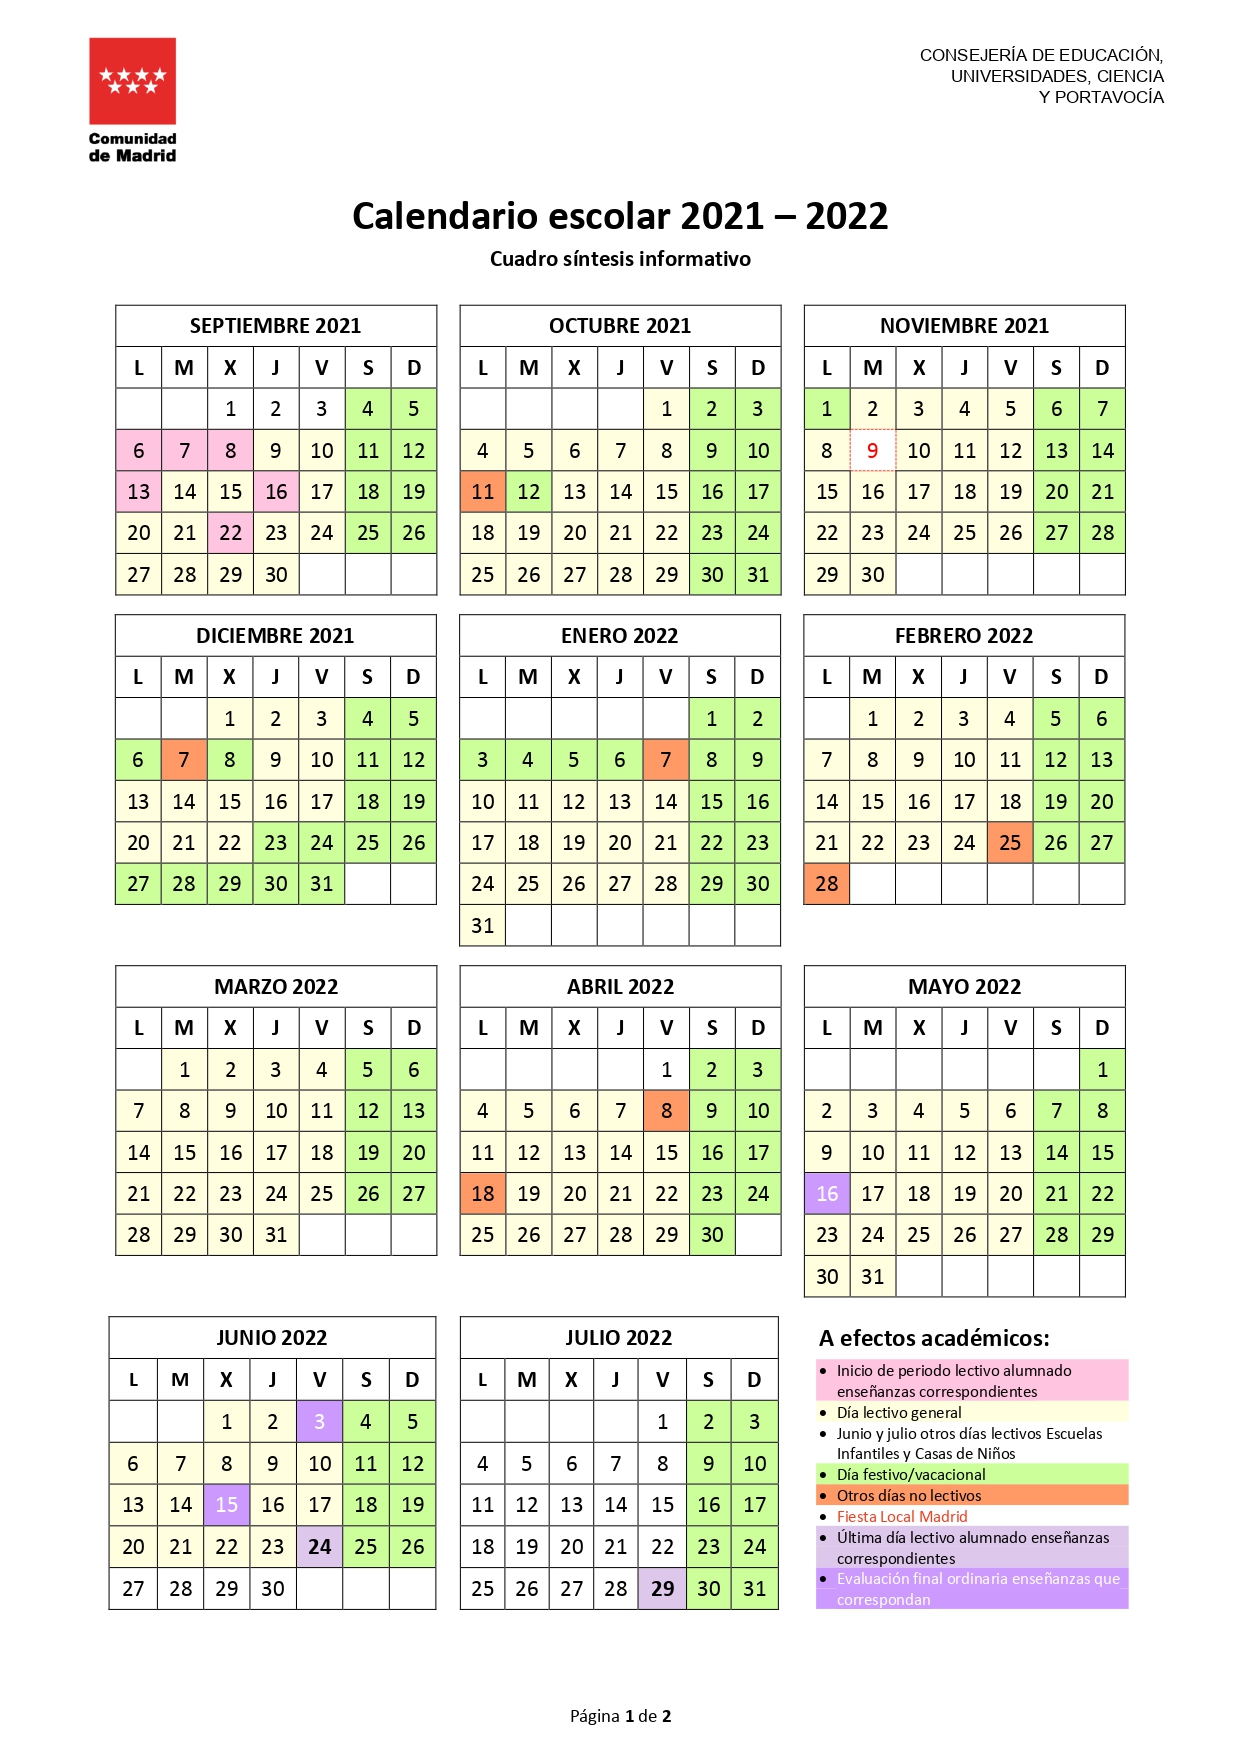 Calendario Escolar 2021 A 2022 Mesa Negociacion Calendario Escolar ...